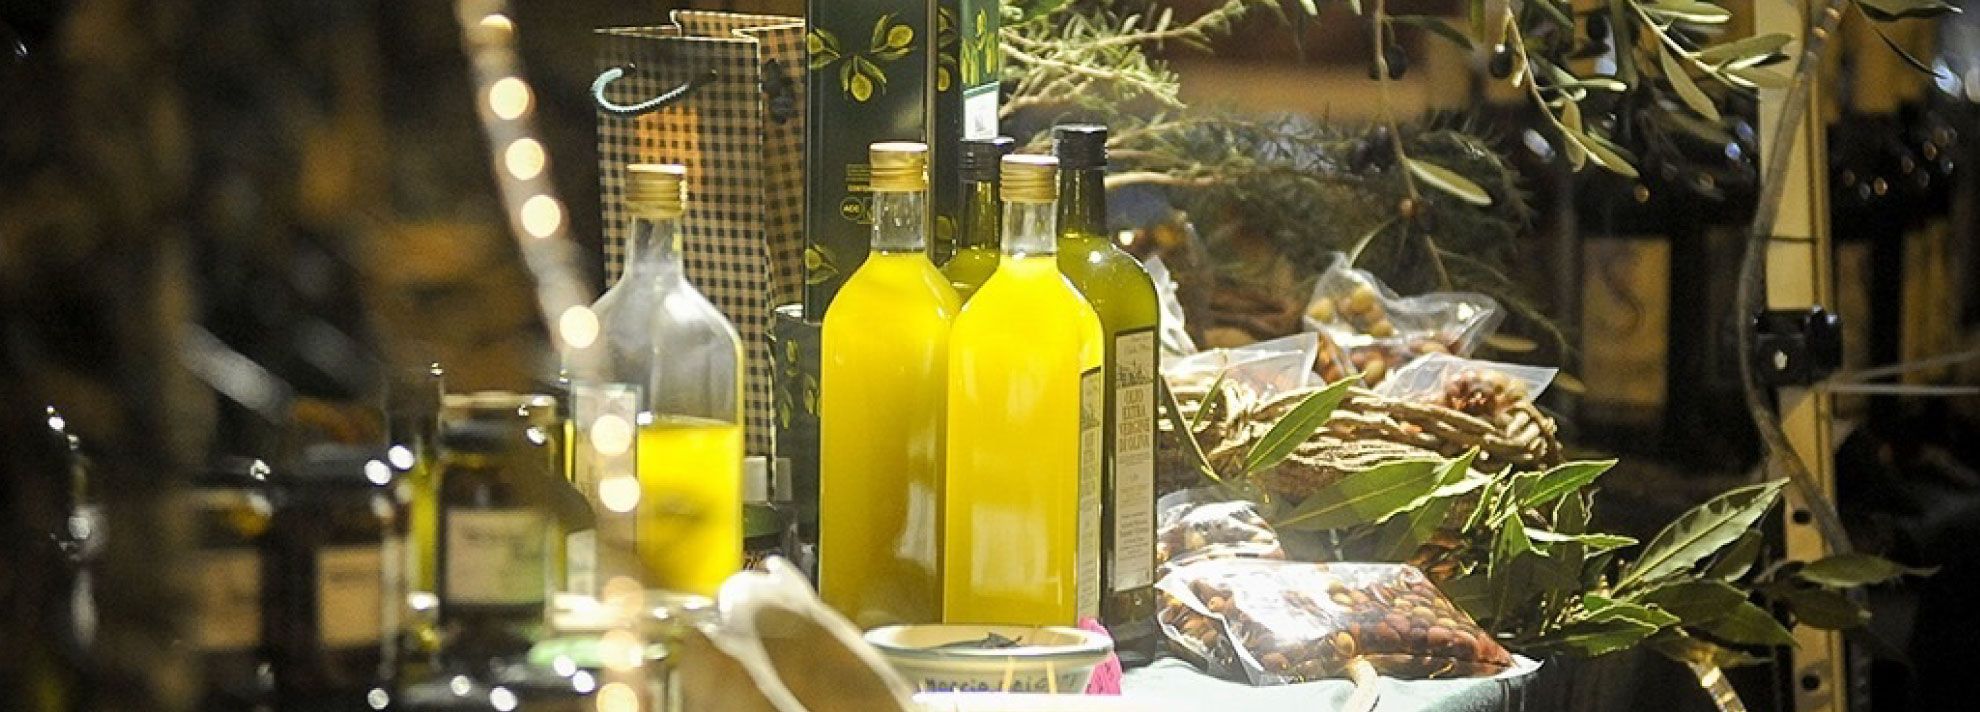 Olioliva: taste Imperia’s new olive 
oil